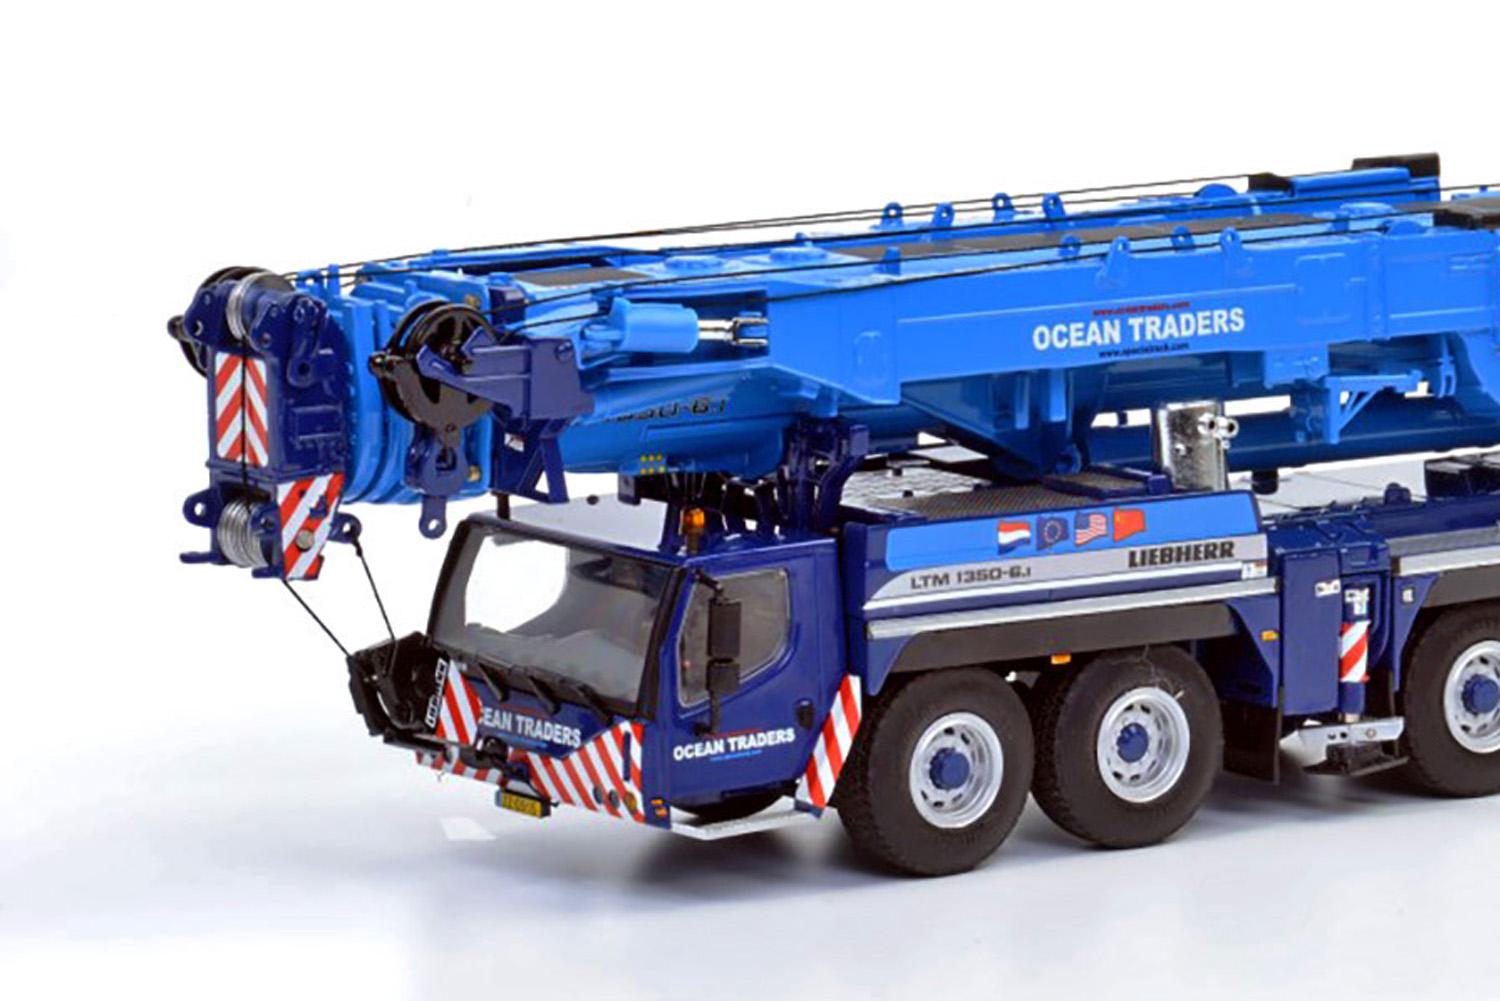 Liebherr LTM 1350-6.1 Mobile Crane - Ocean Traders